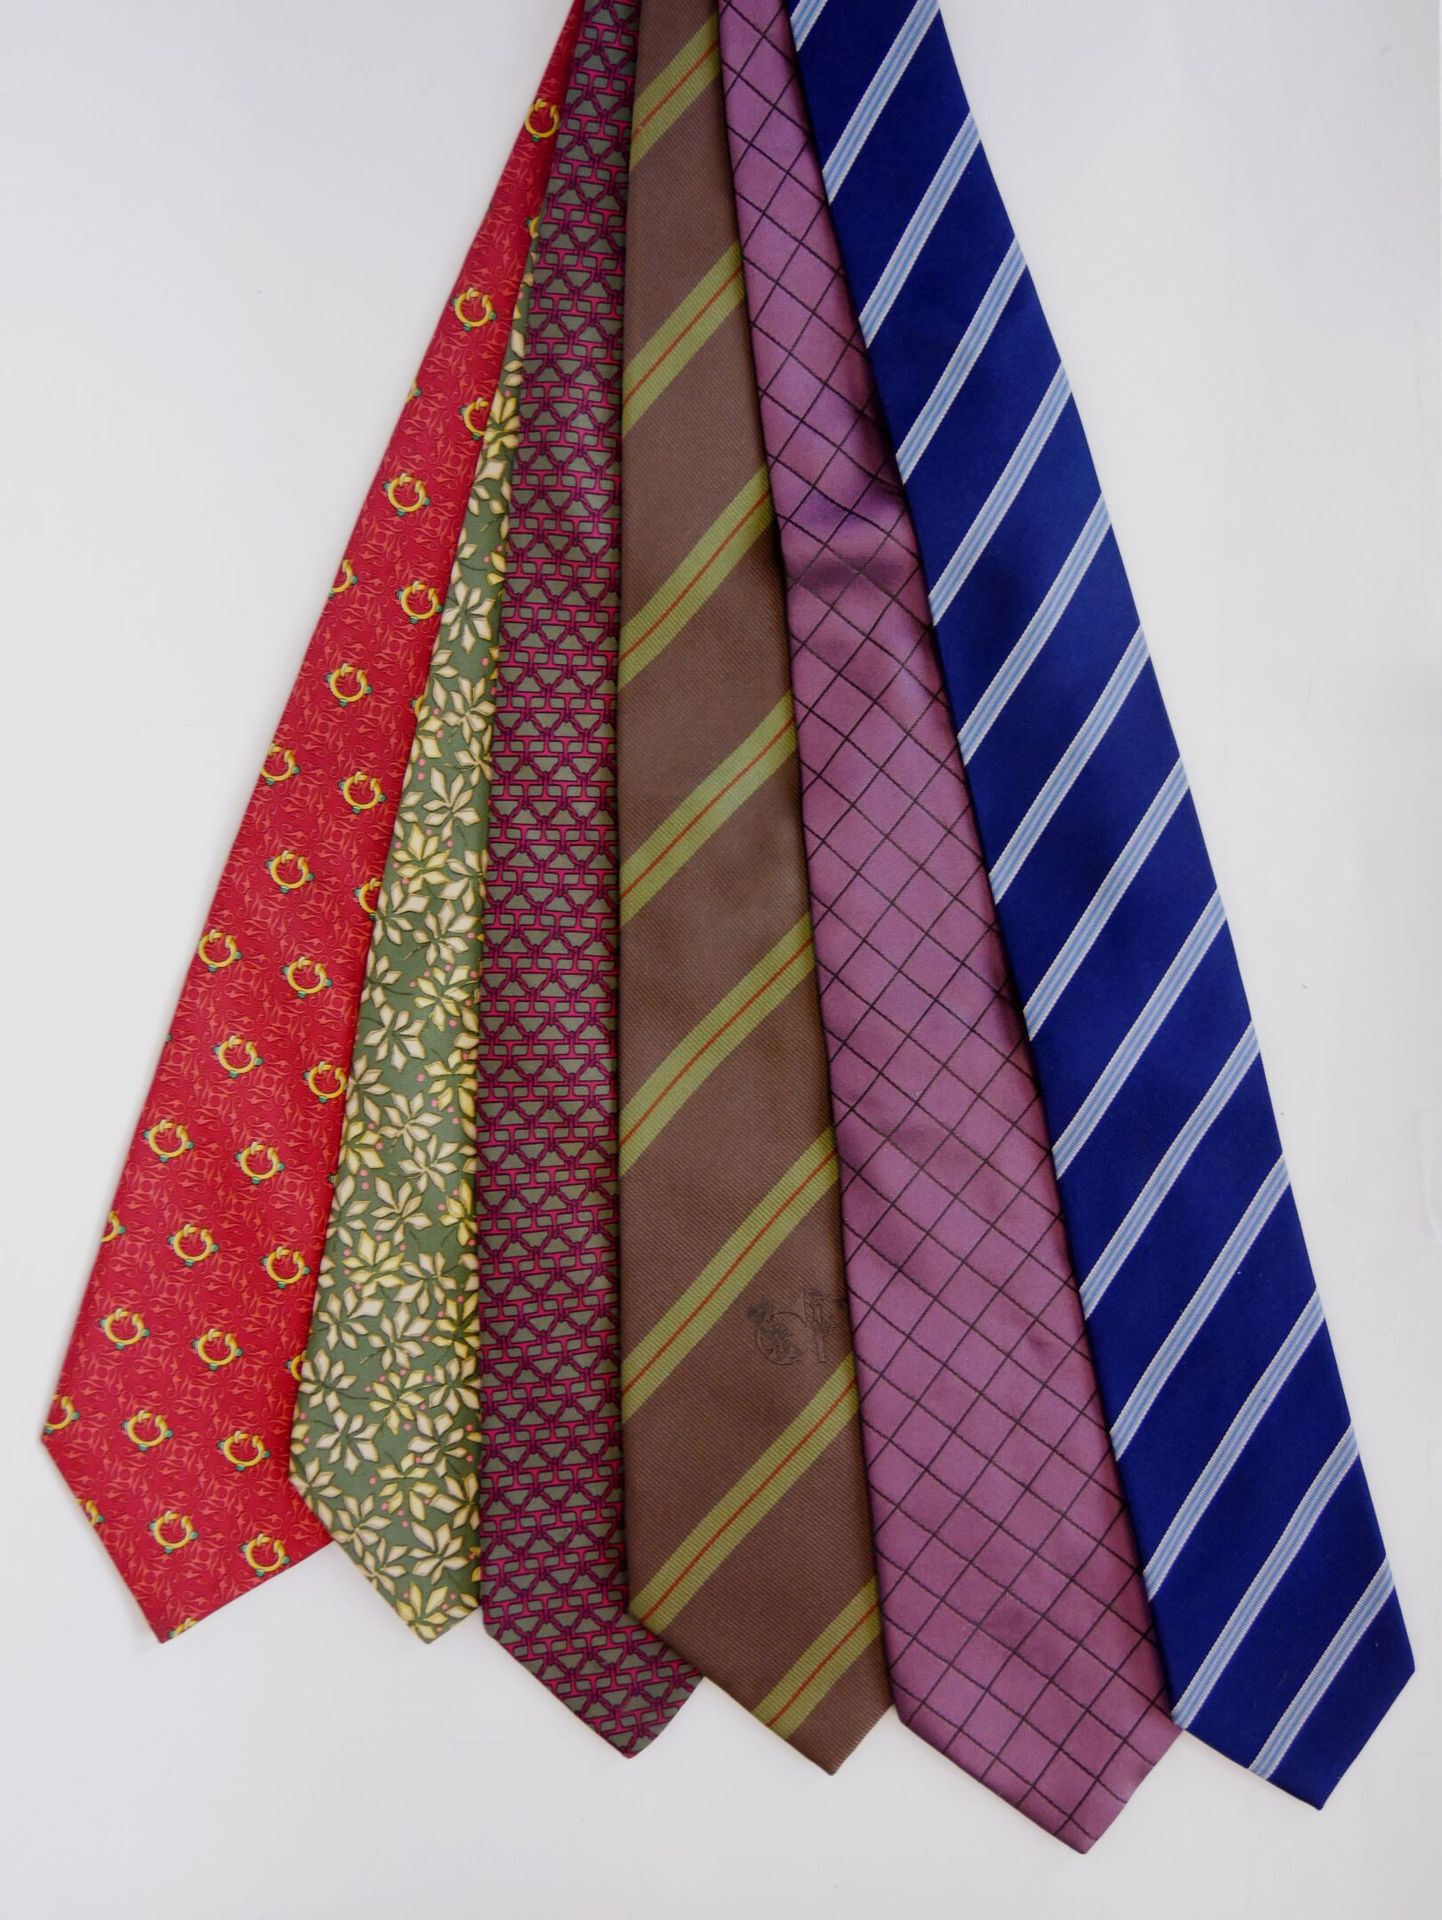 Null Juego de 6 corbatas de seda para hombre de las marcas : 

- FLECHA

- BURBE&hellip;